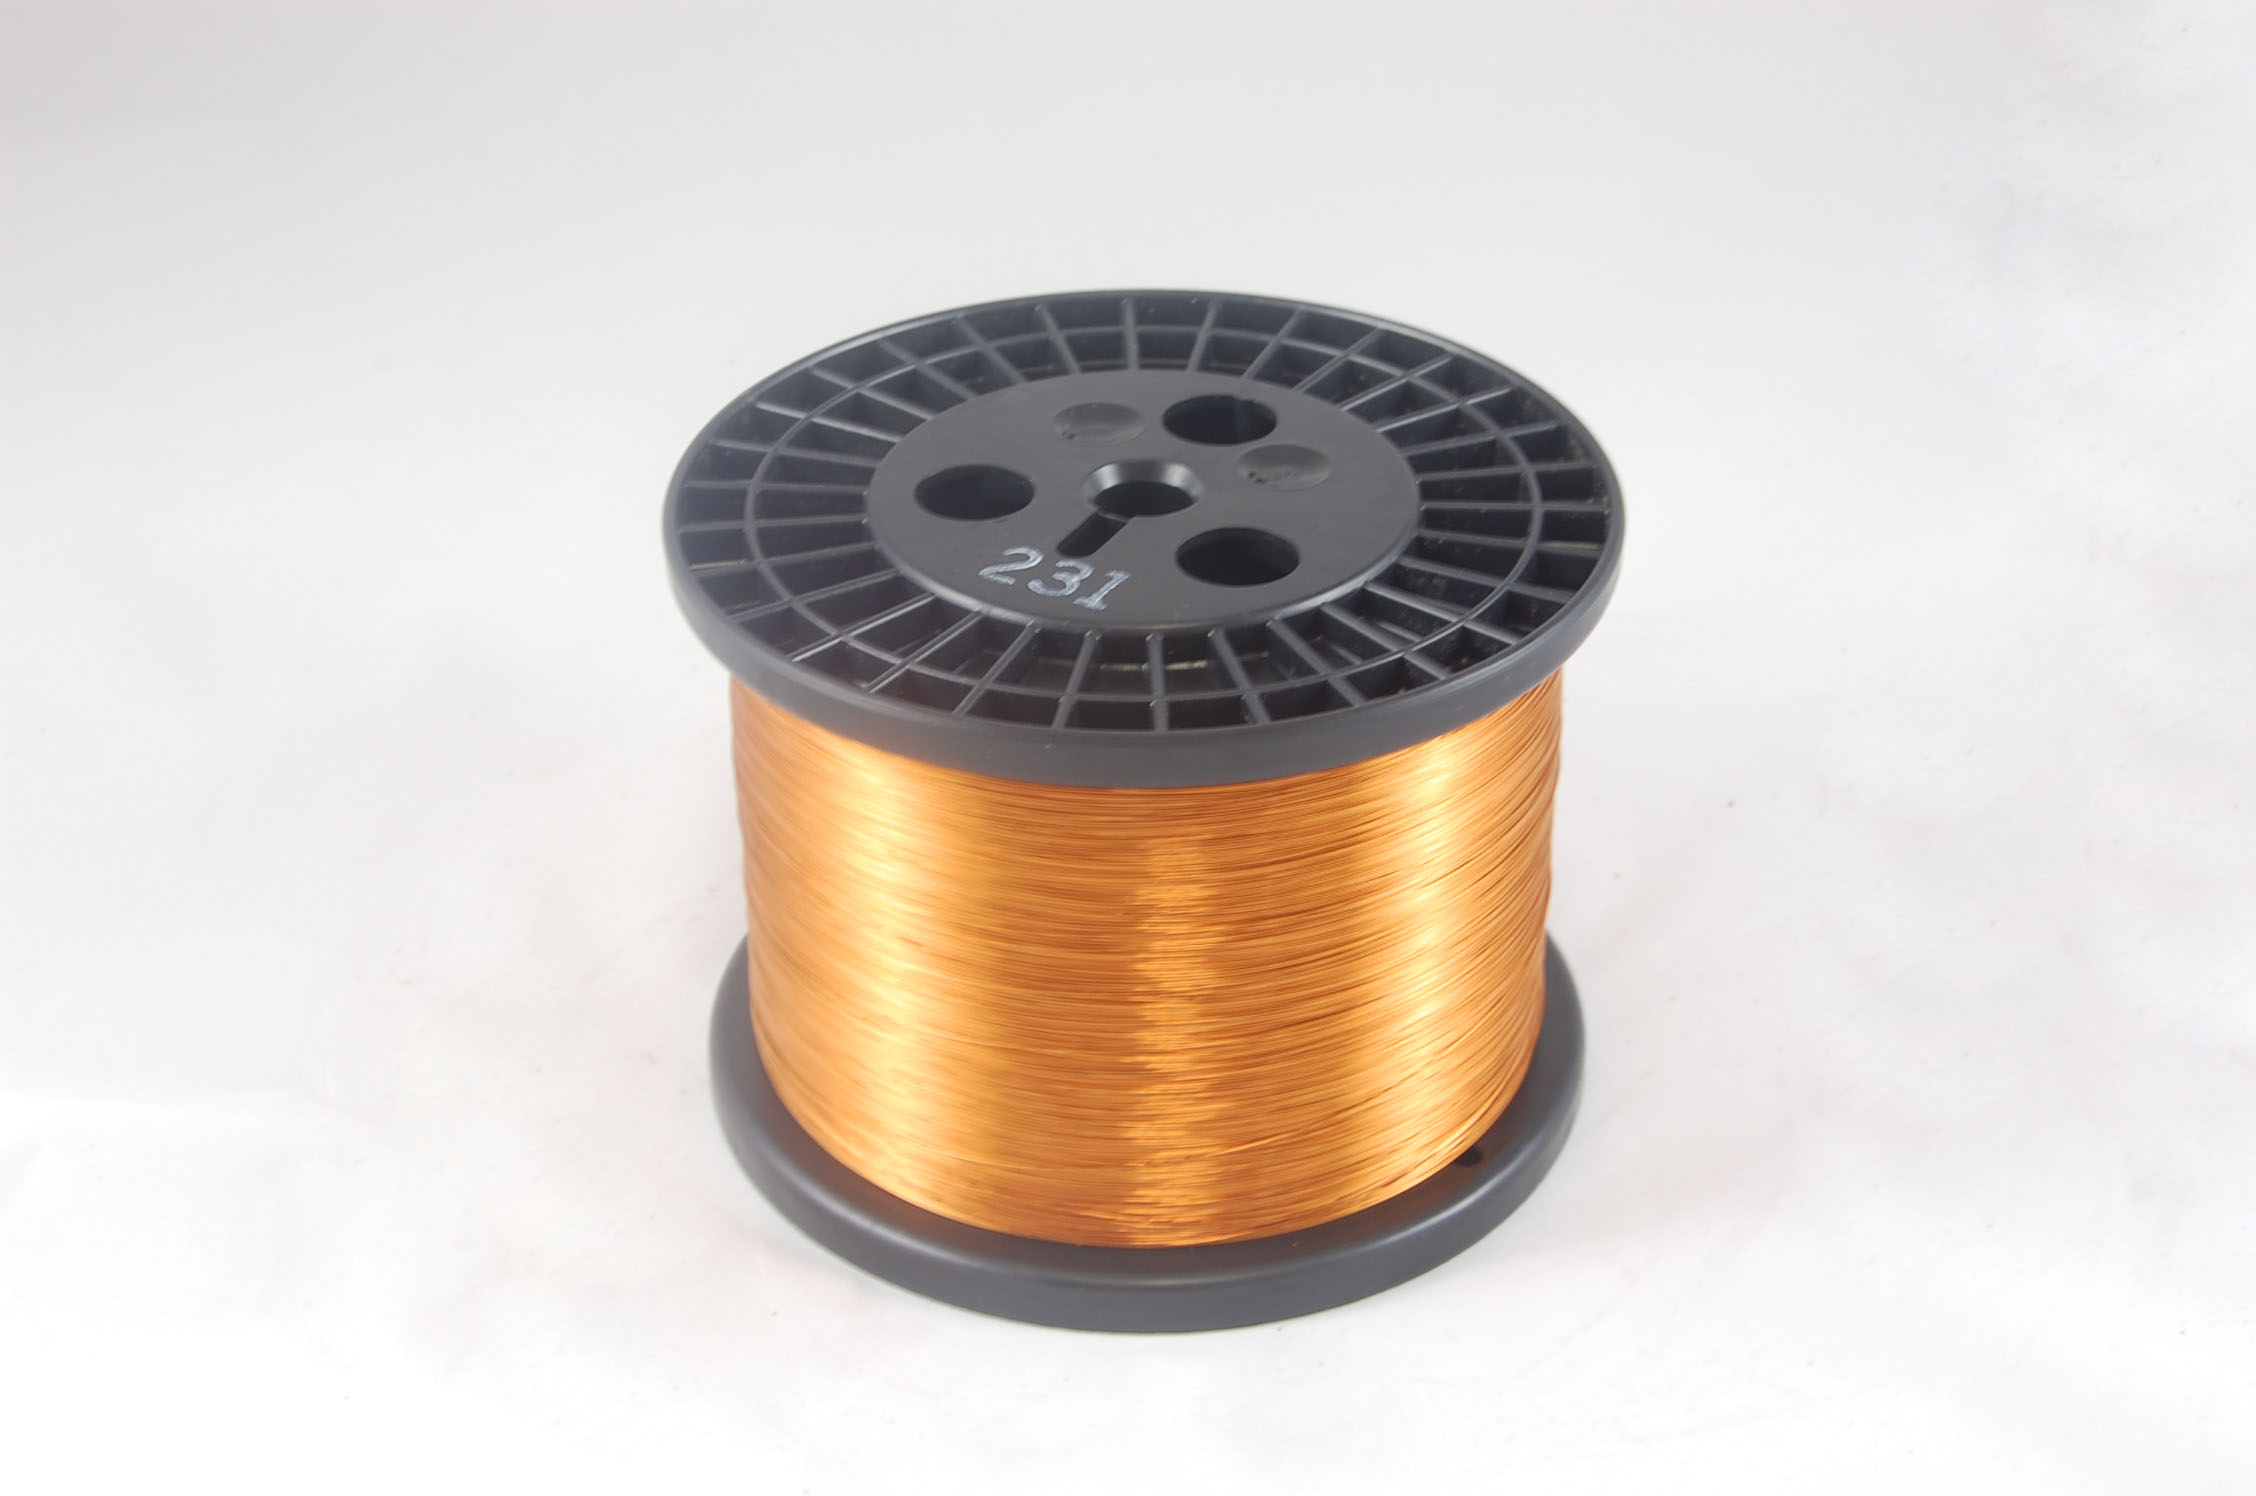 #16 Heavy GP/MR-200 Round MW 35 Copper Magnet Wire 200°C, copper, 10 LB 6" spool (average wght.)